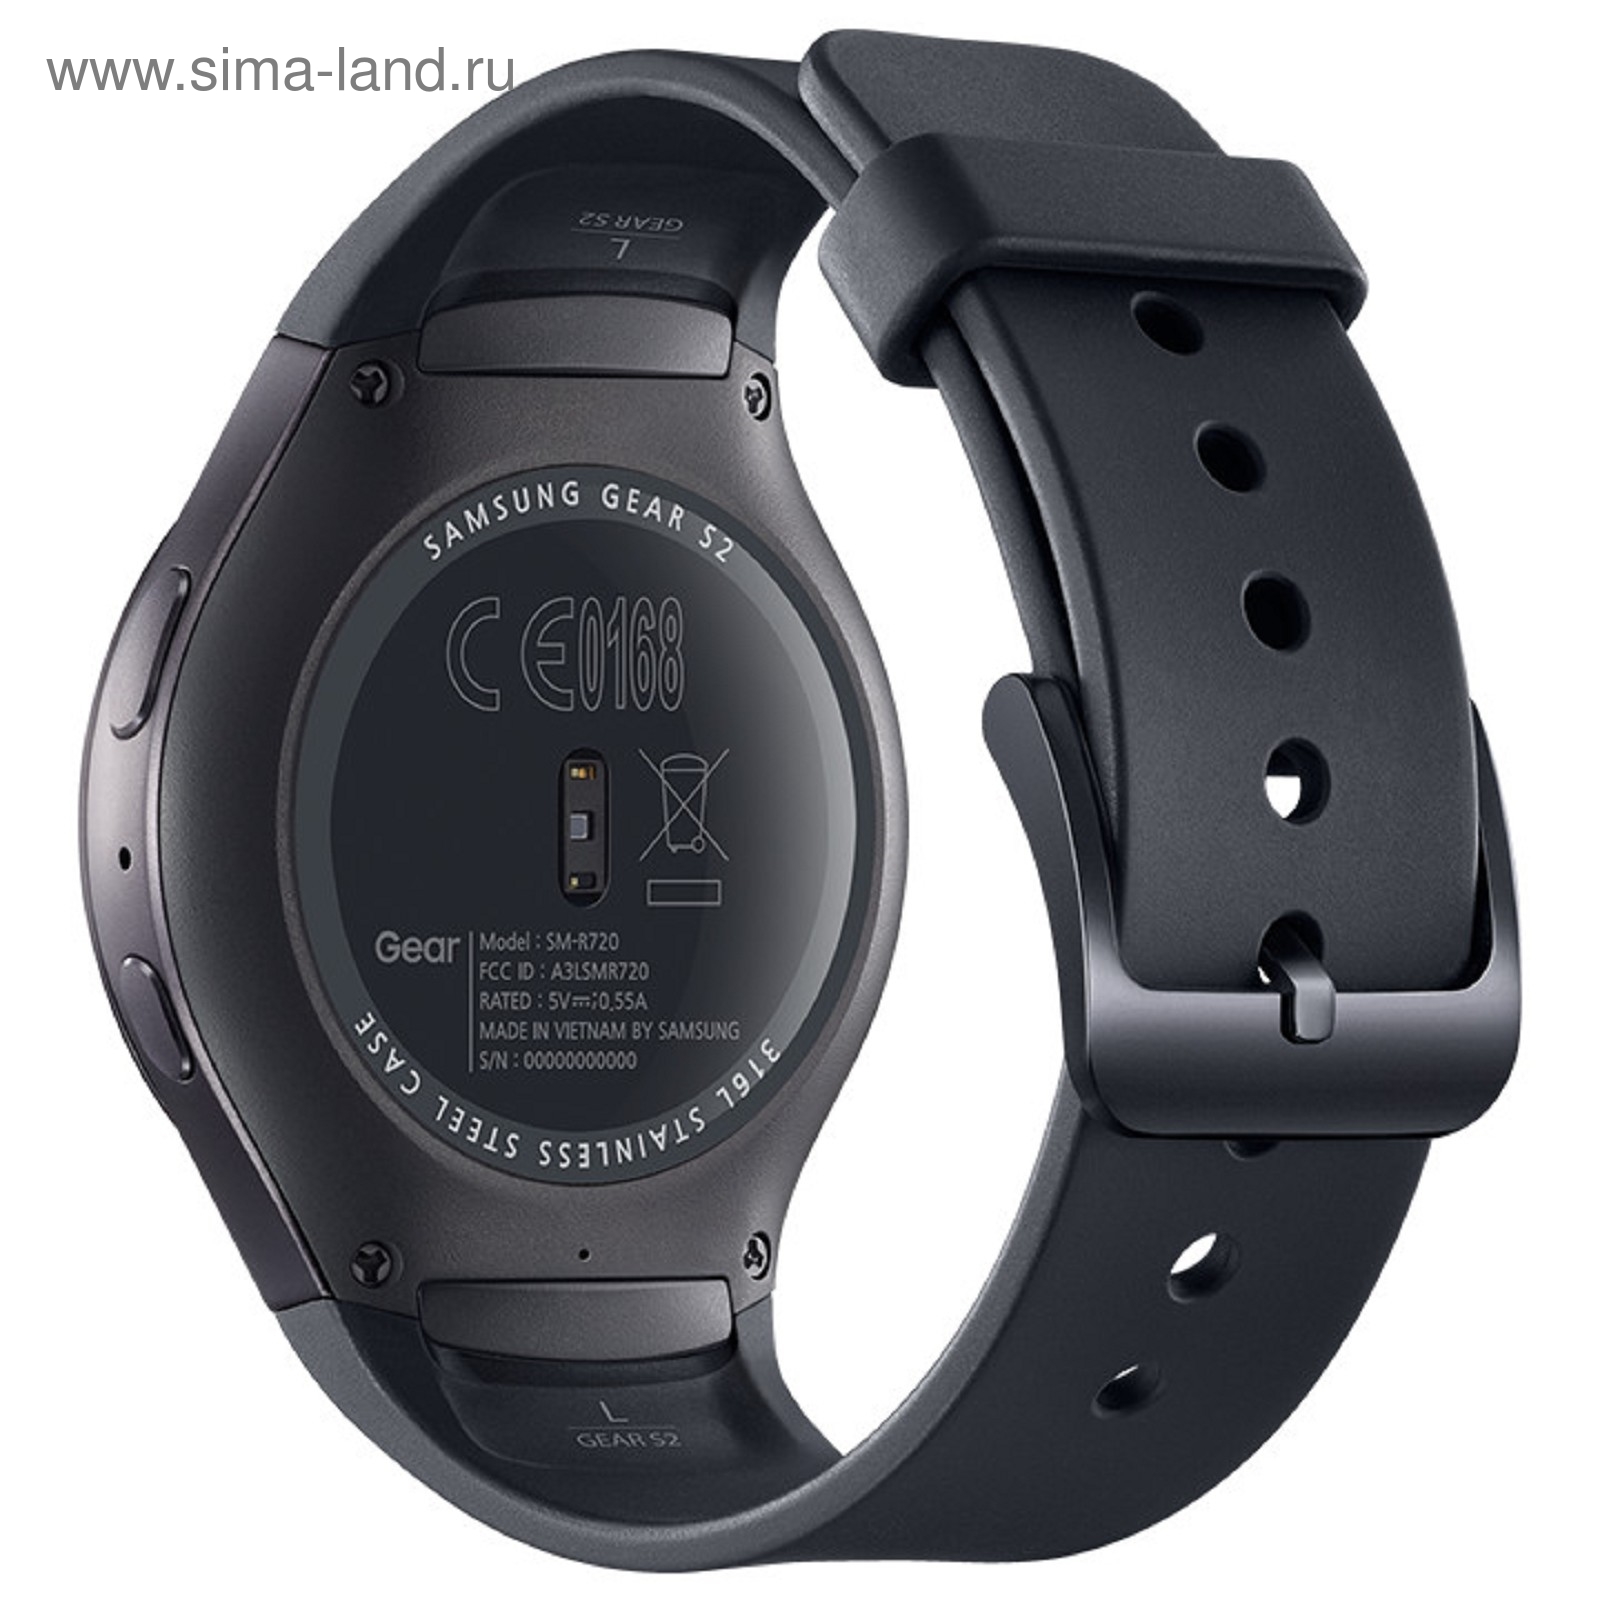 Смарт-часы Samsung Galaxy Gear S2 SM-R7200, тёмно-серый